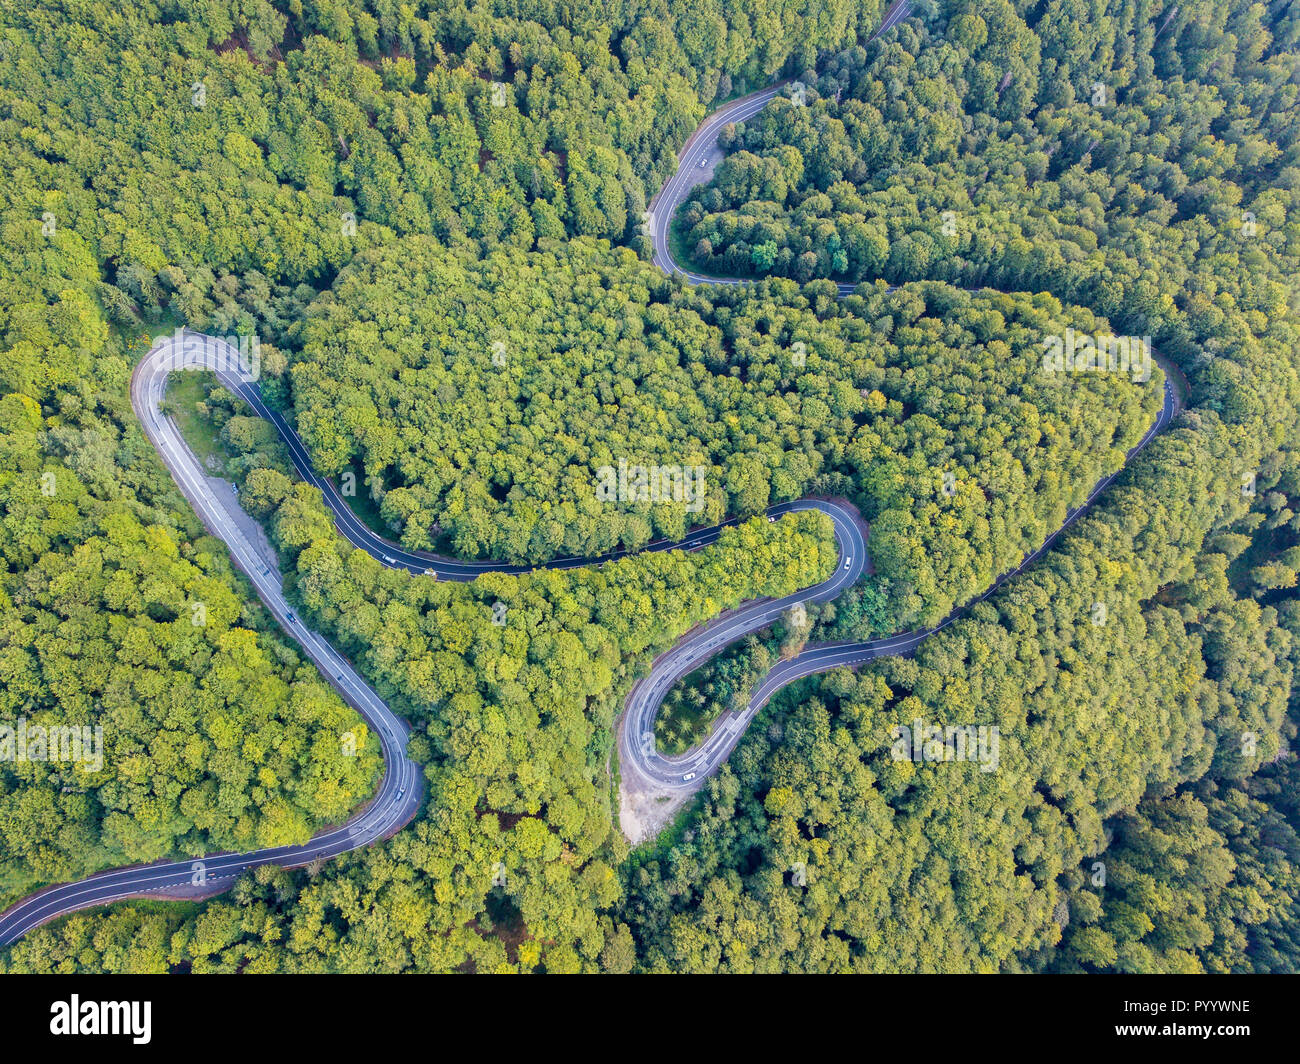 Transfagarasan route nationale DN7C reliant les régions de la Transylvanie et la Valachie. Asphalte sinueuse route pavée en bois de montagnes des Carpates, en Roumanie. Drone aérien vue. La vue de la carte Banque D'Images